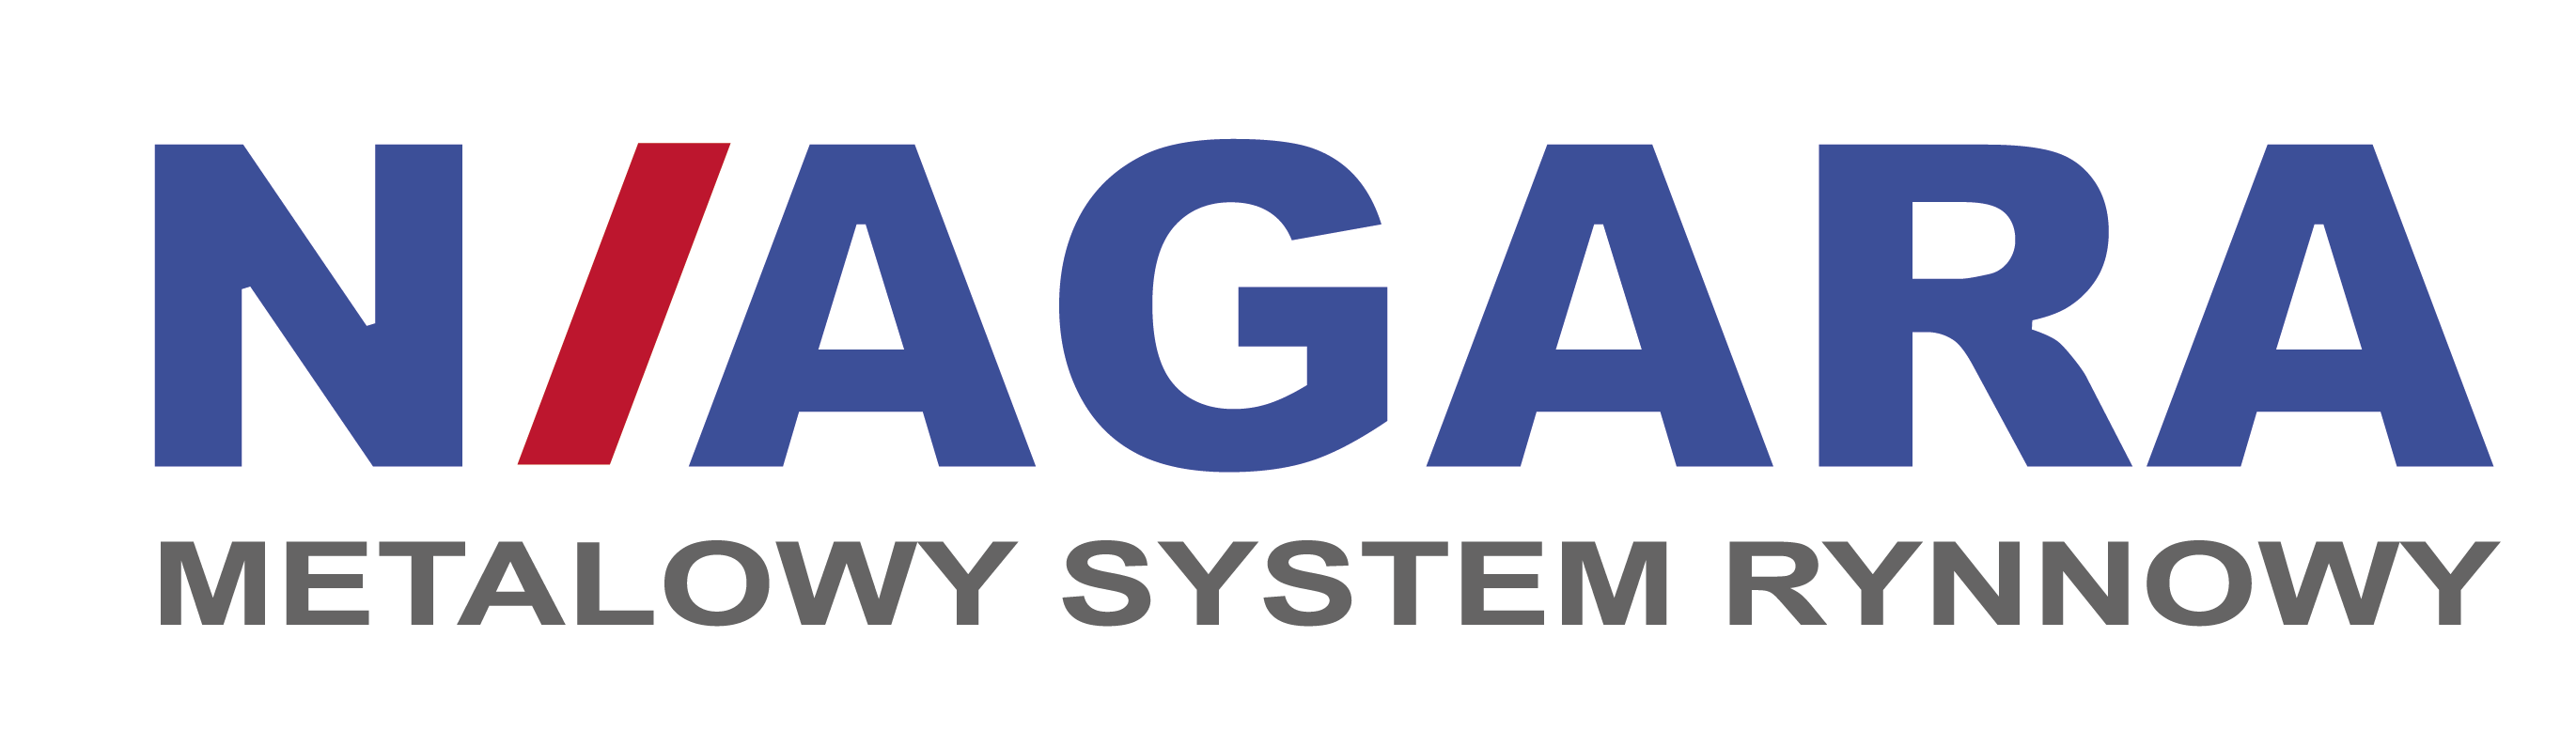 NIAGARA-system-rynnowy.png